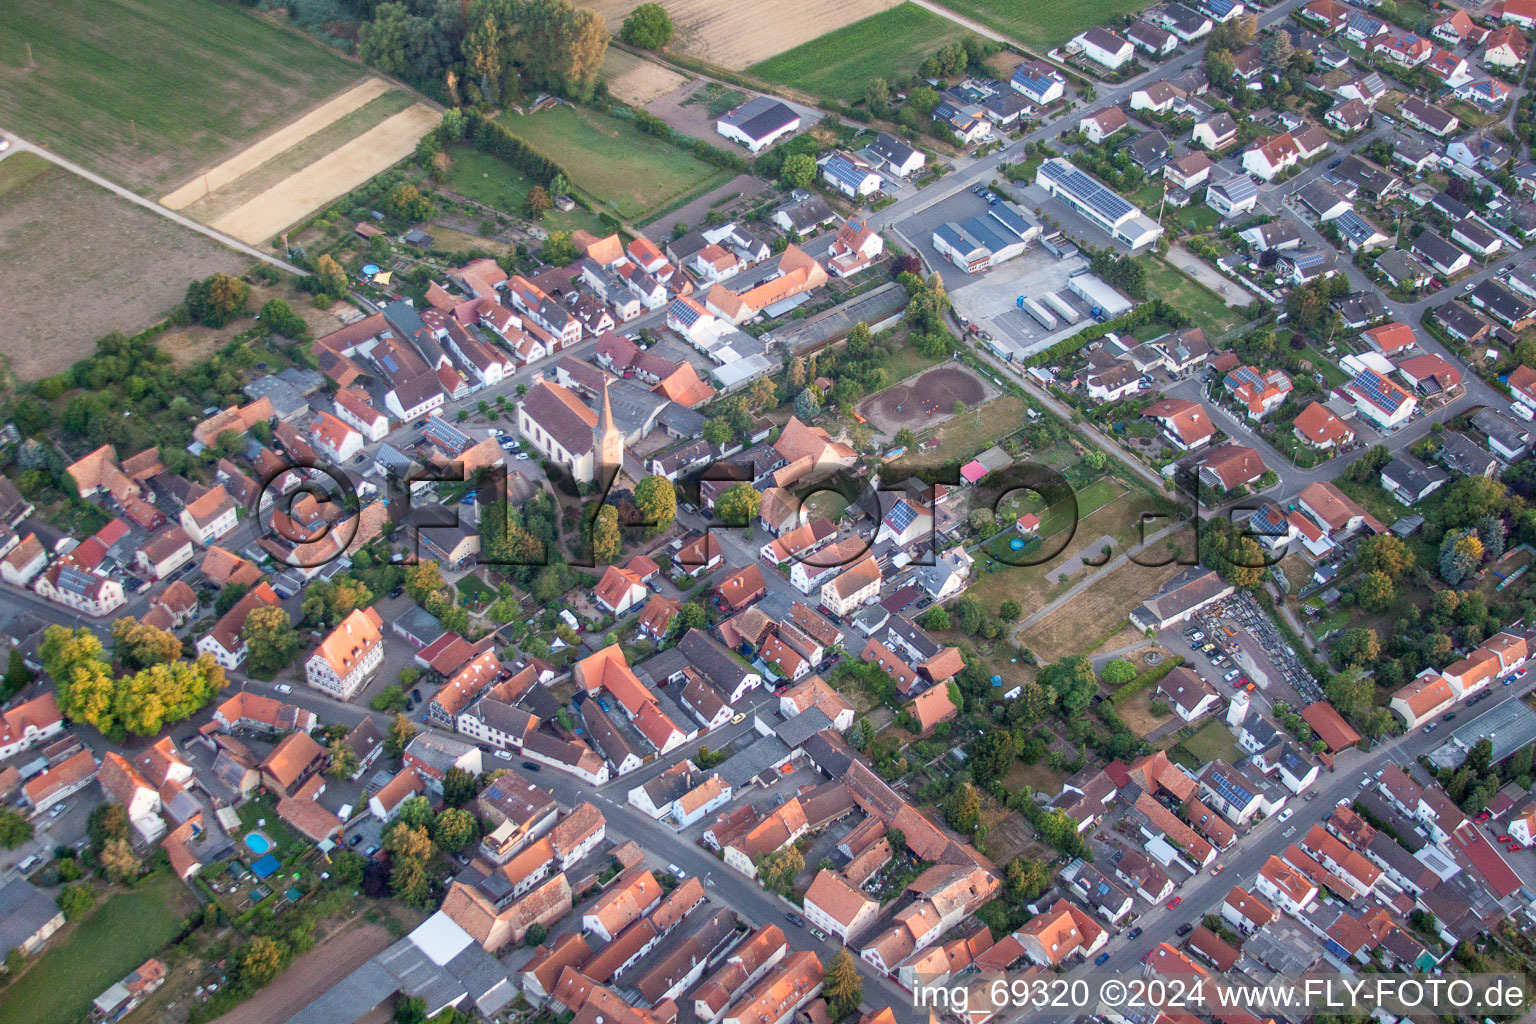 Photographie aérienne de Bâtiment d'église au centre du village à Knittelsheim dans le département Rhénanie-Palatinat, Allemagne